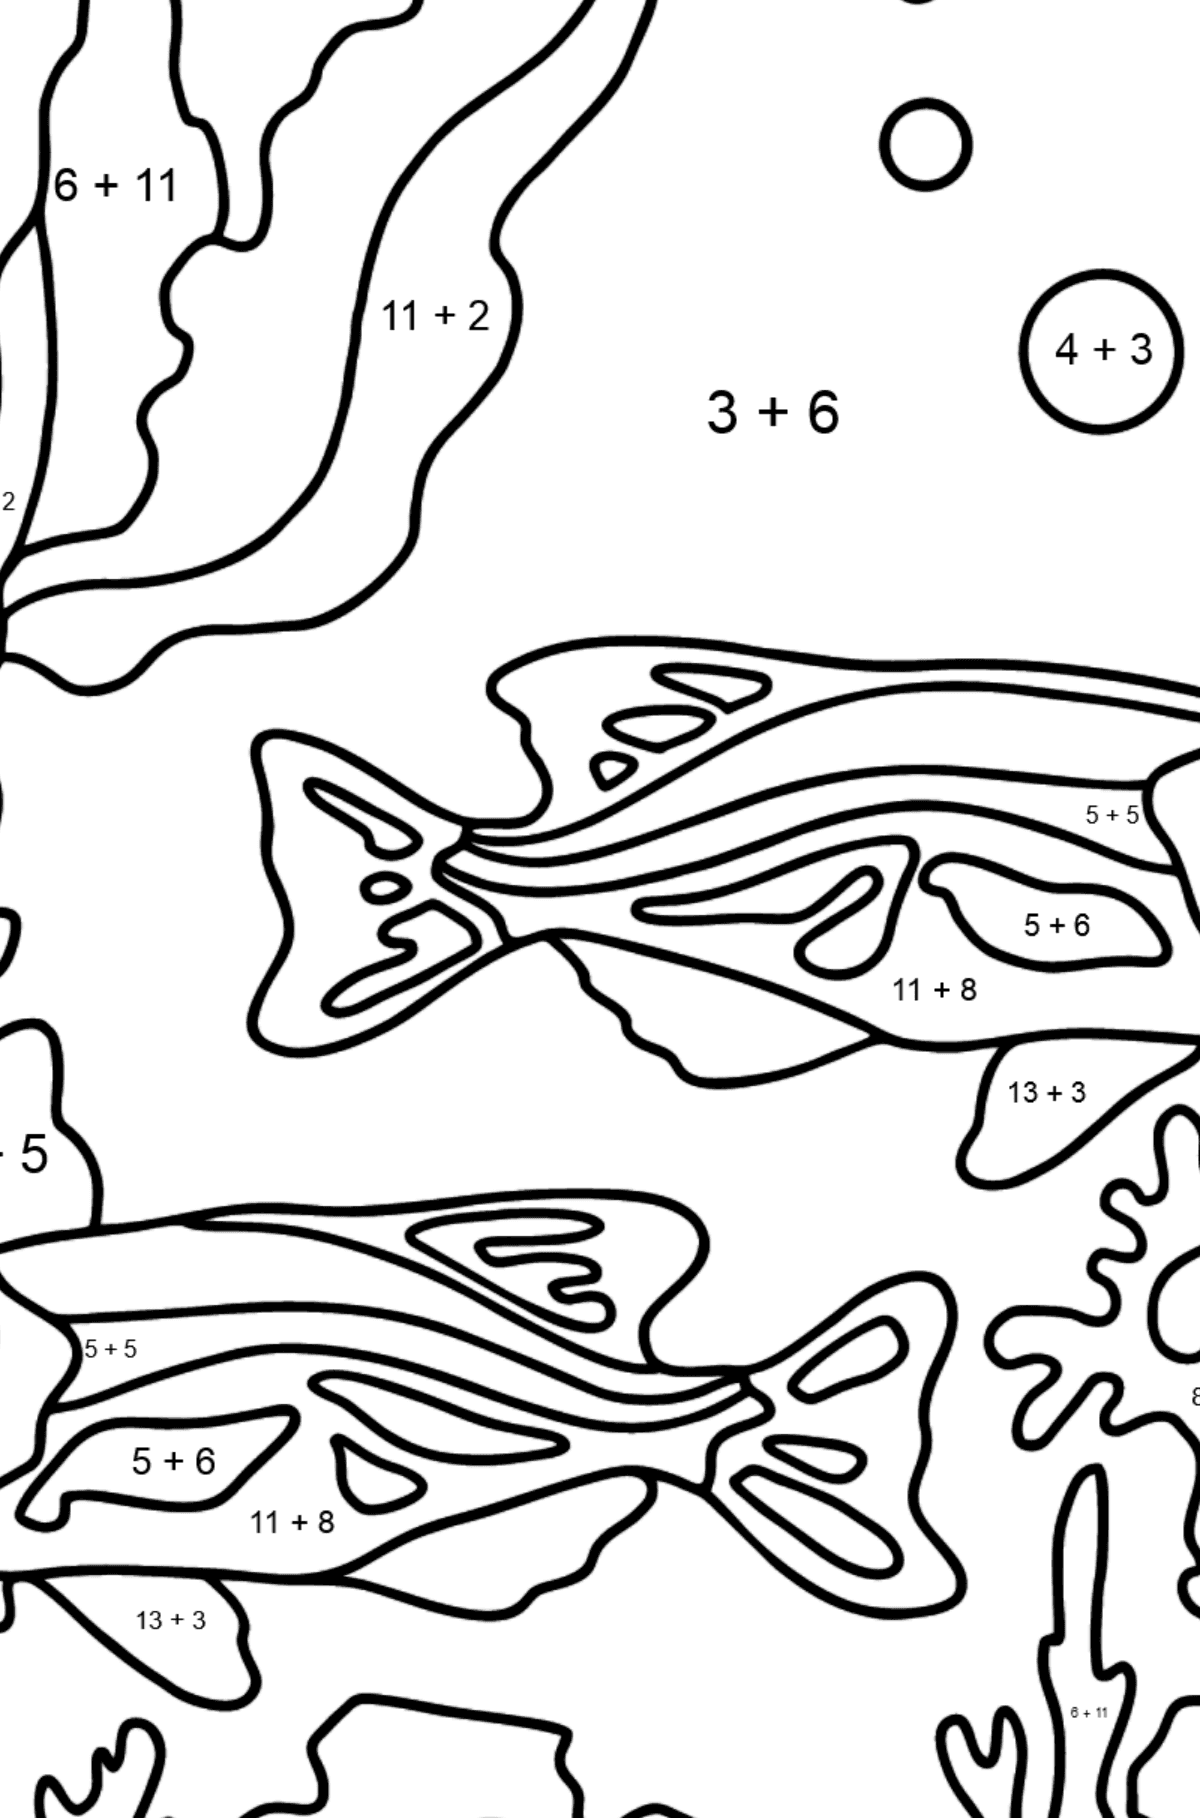 Dibujo para Colorear - Los Peces están Nadando Juntos Pacíficamente - Colorear con Matemáticas - Sumas para Niños